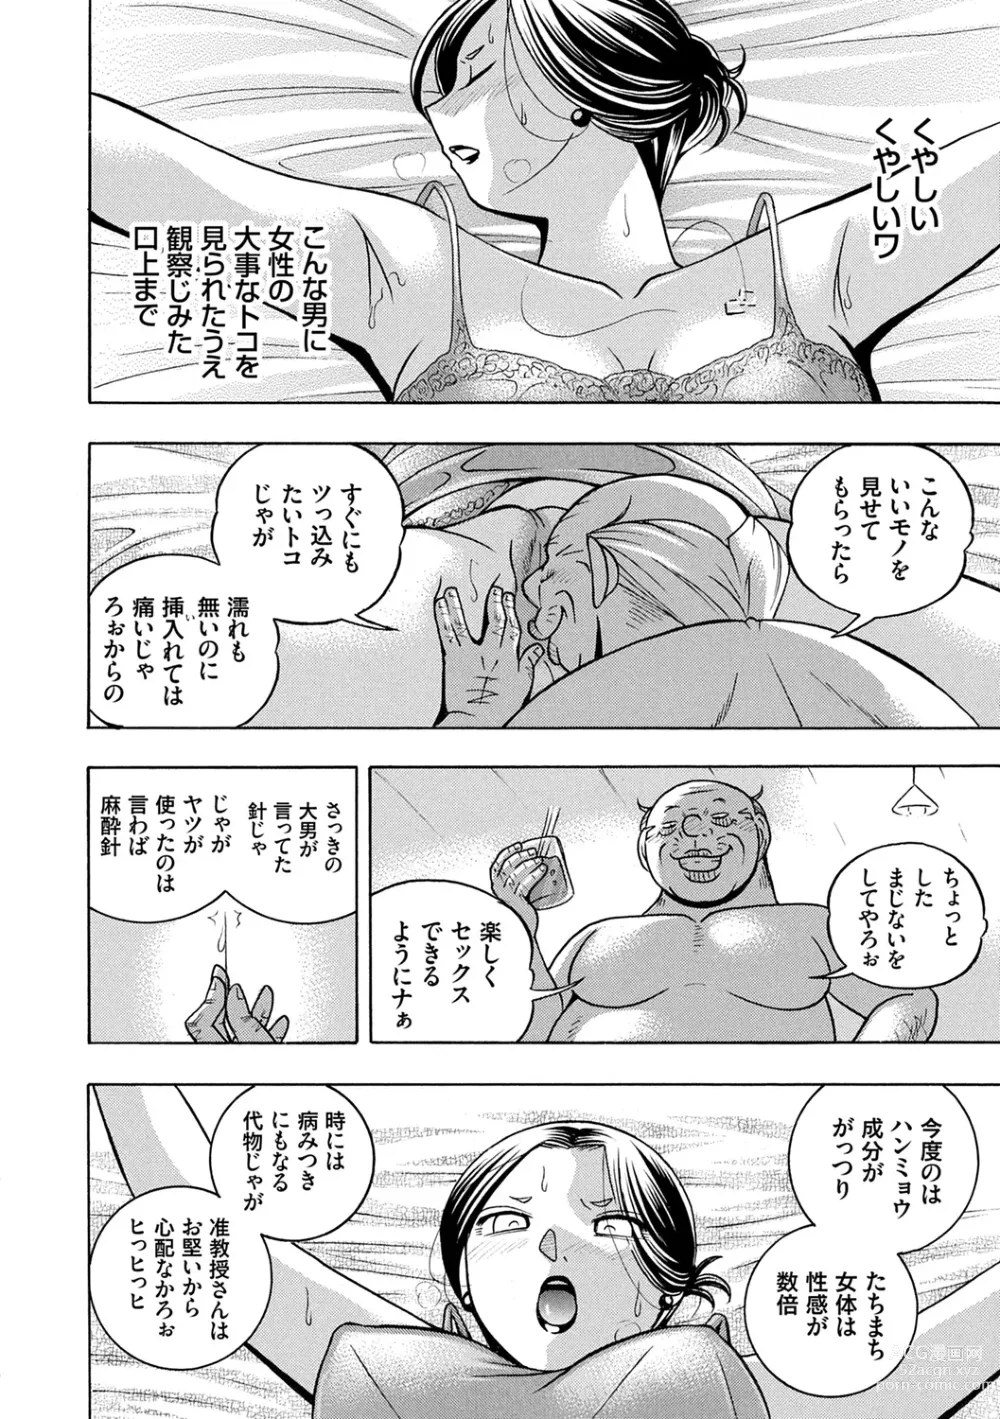 Page 22 of manga Jiyunkyouju Asako ~Bi Niku Hisho Ka~